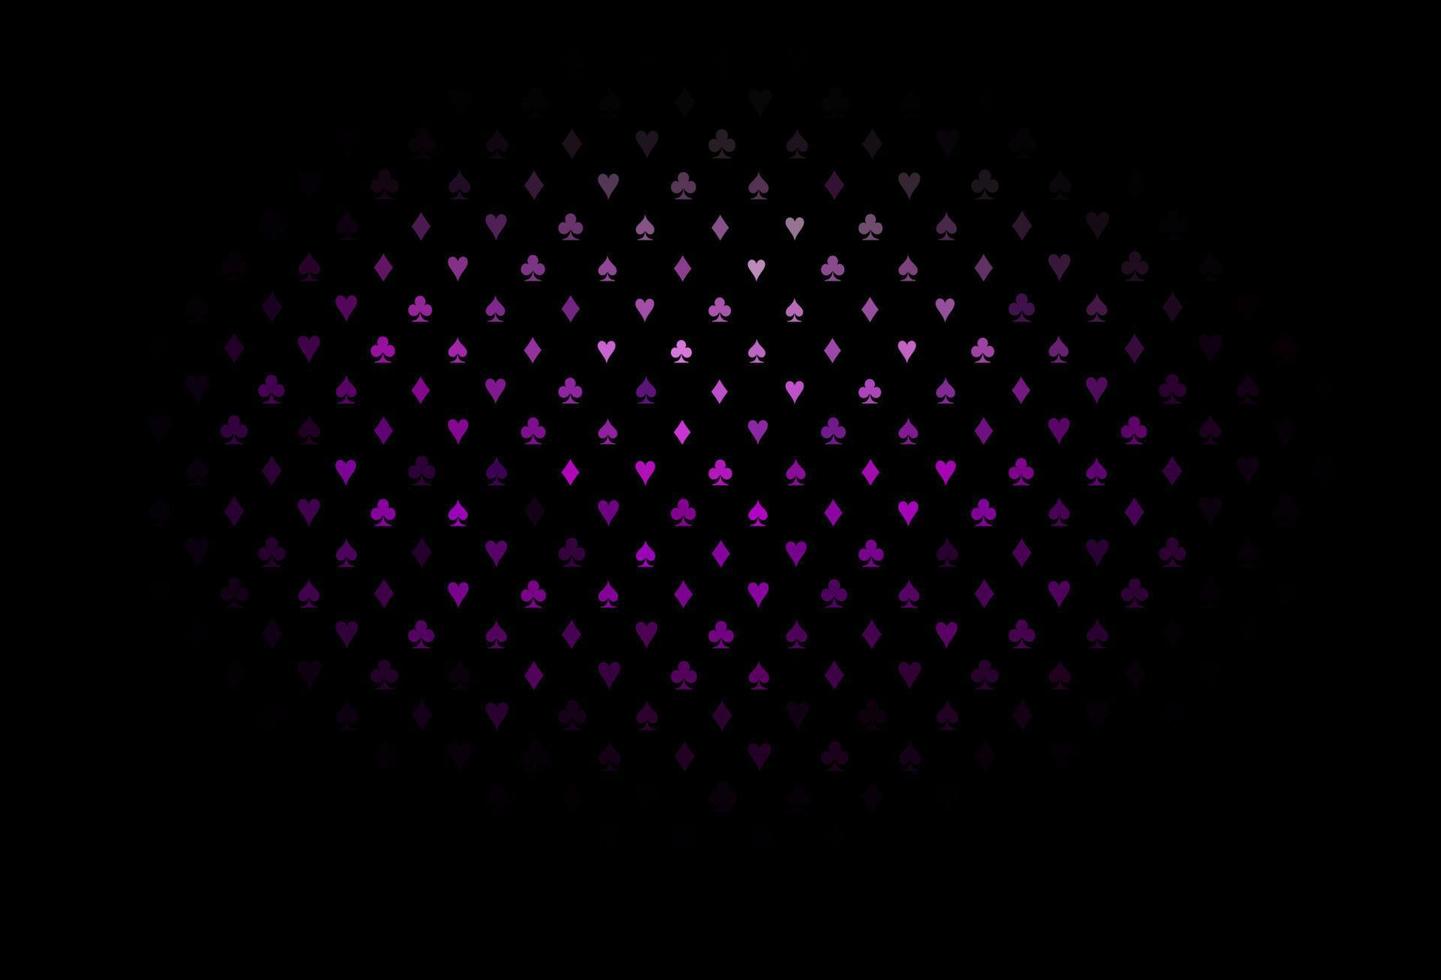 cubierta de vector de color púrpura oscuro con símbolos de apuesta.